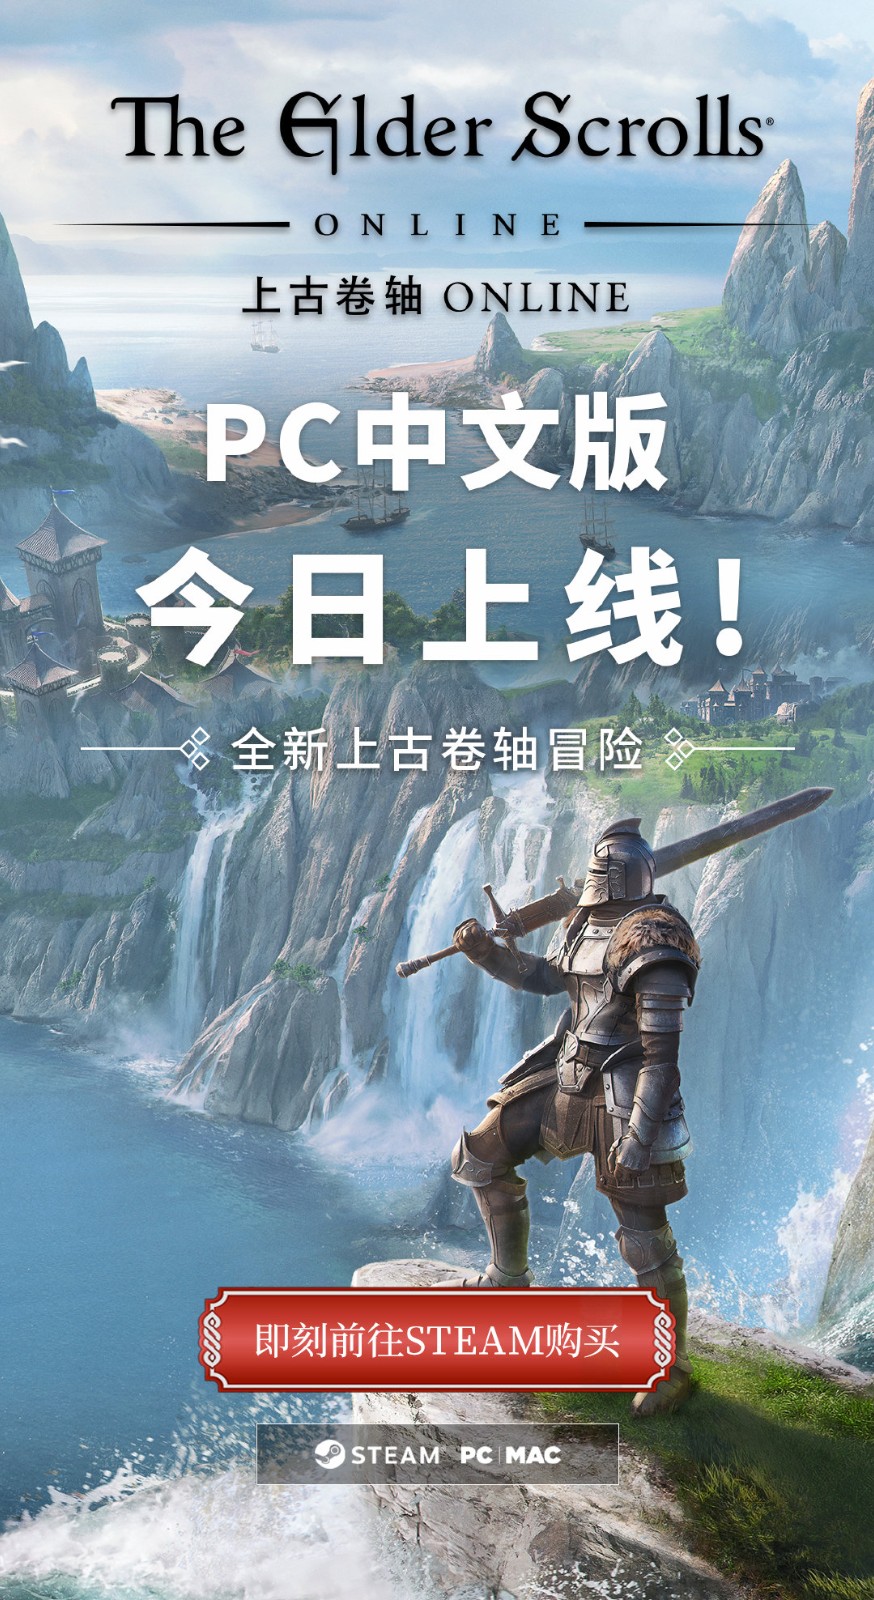 《上古卷轴OL》现已加入简体中文 可加入2100万玩家行列 二次世界 第3张